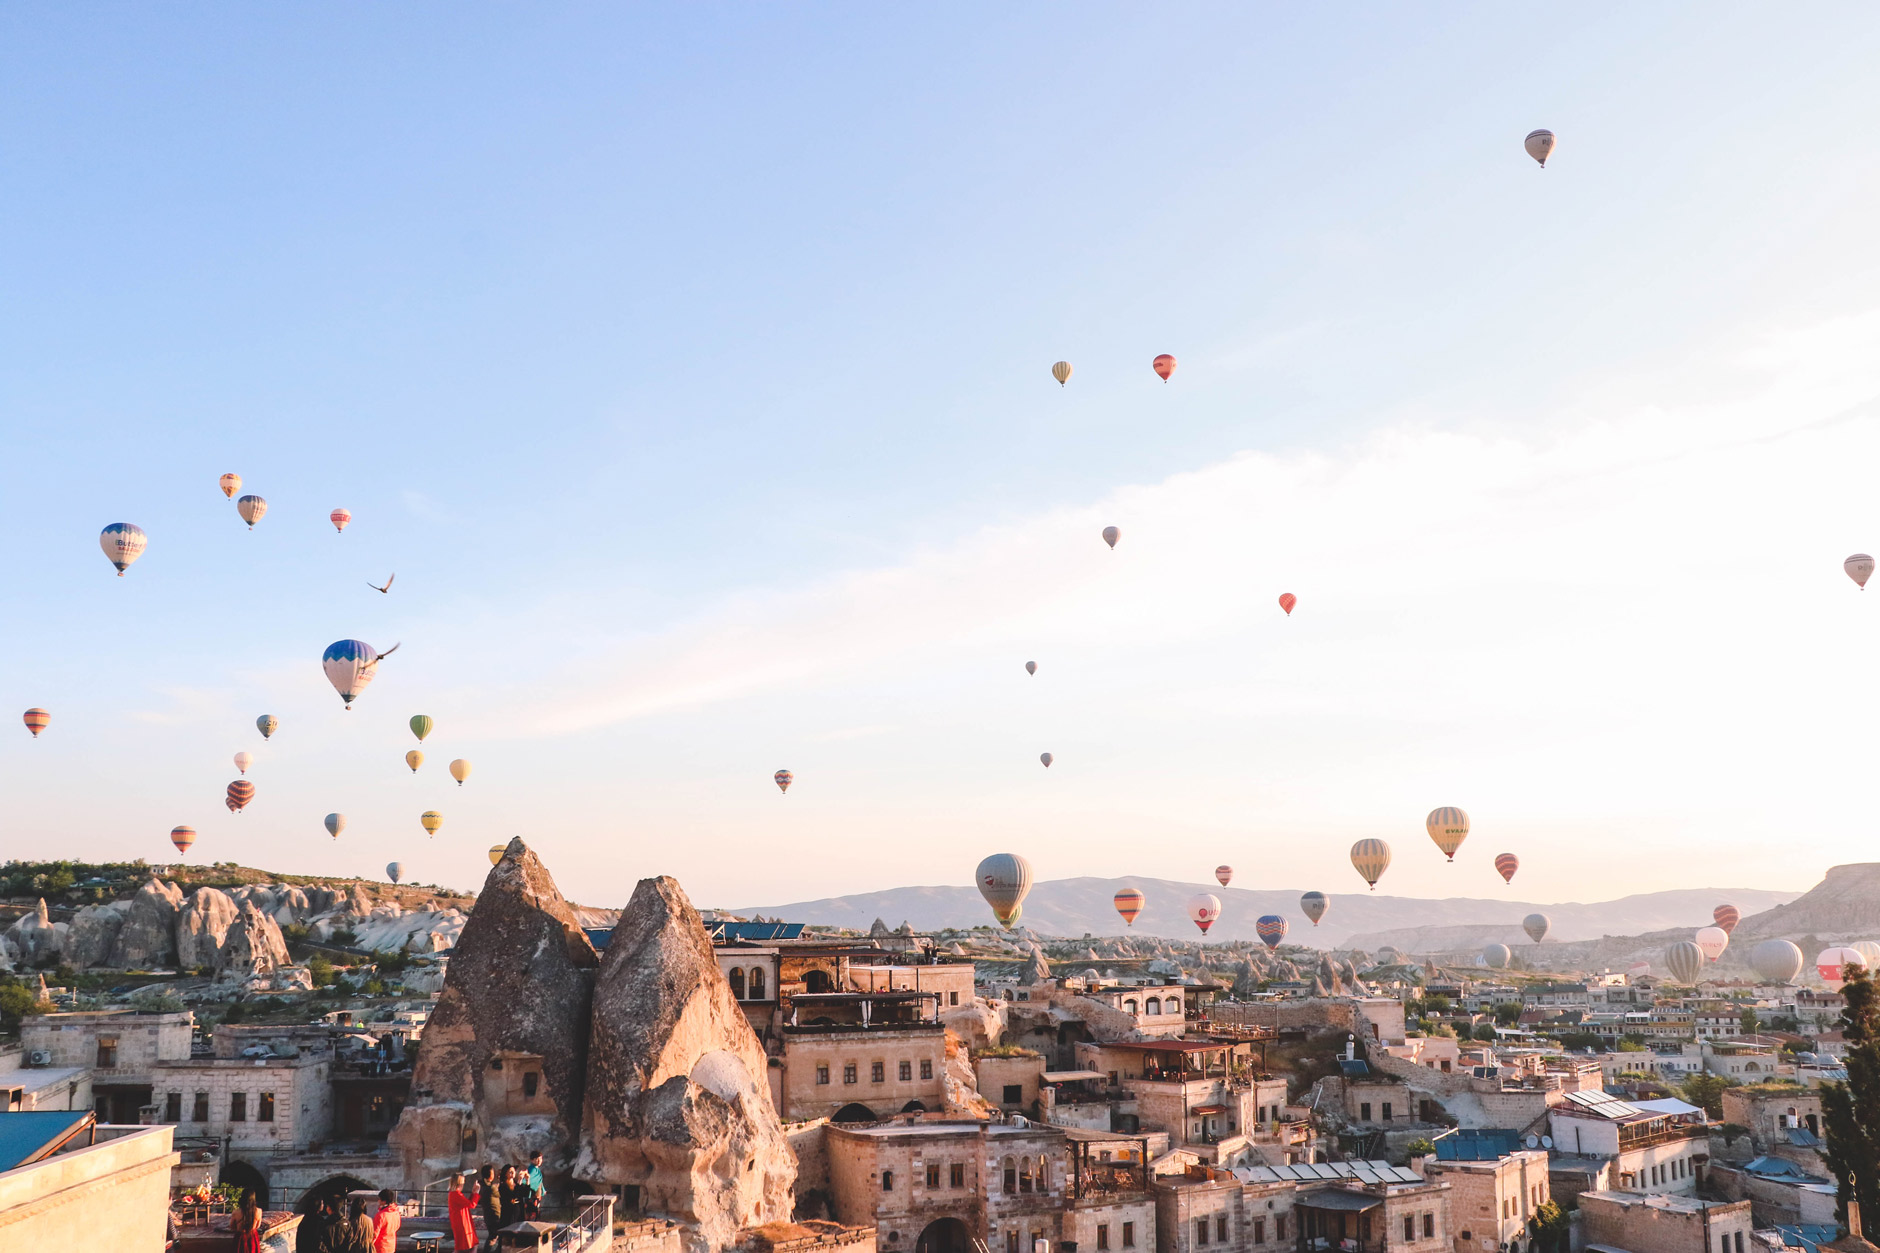 Cappadocia Hot Air Balloons